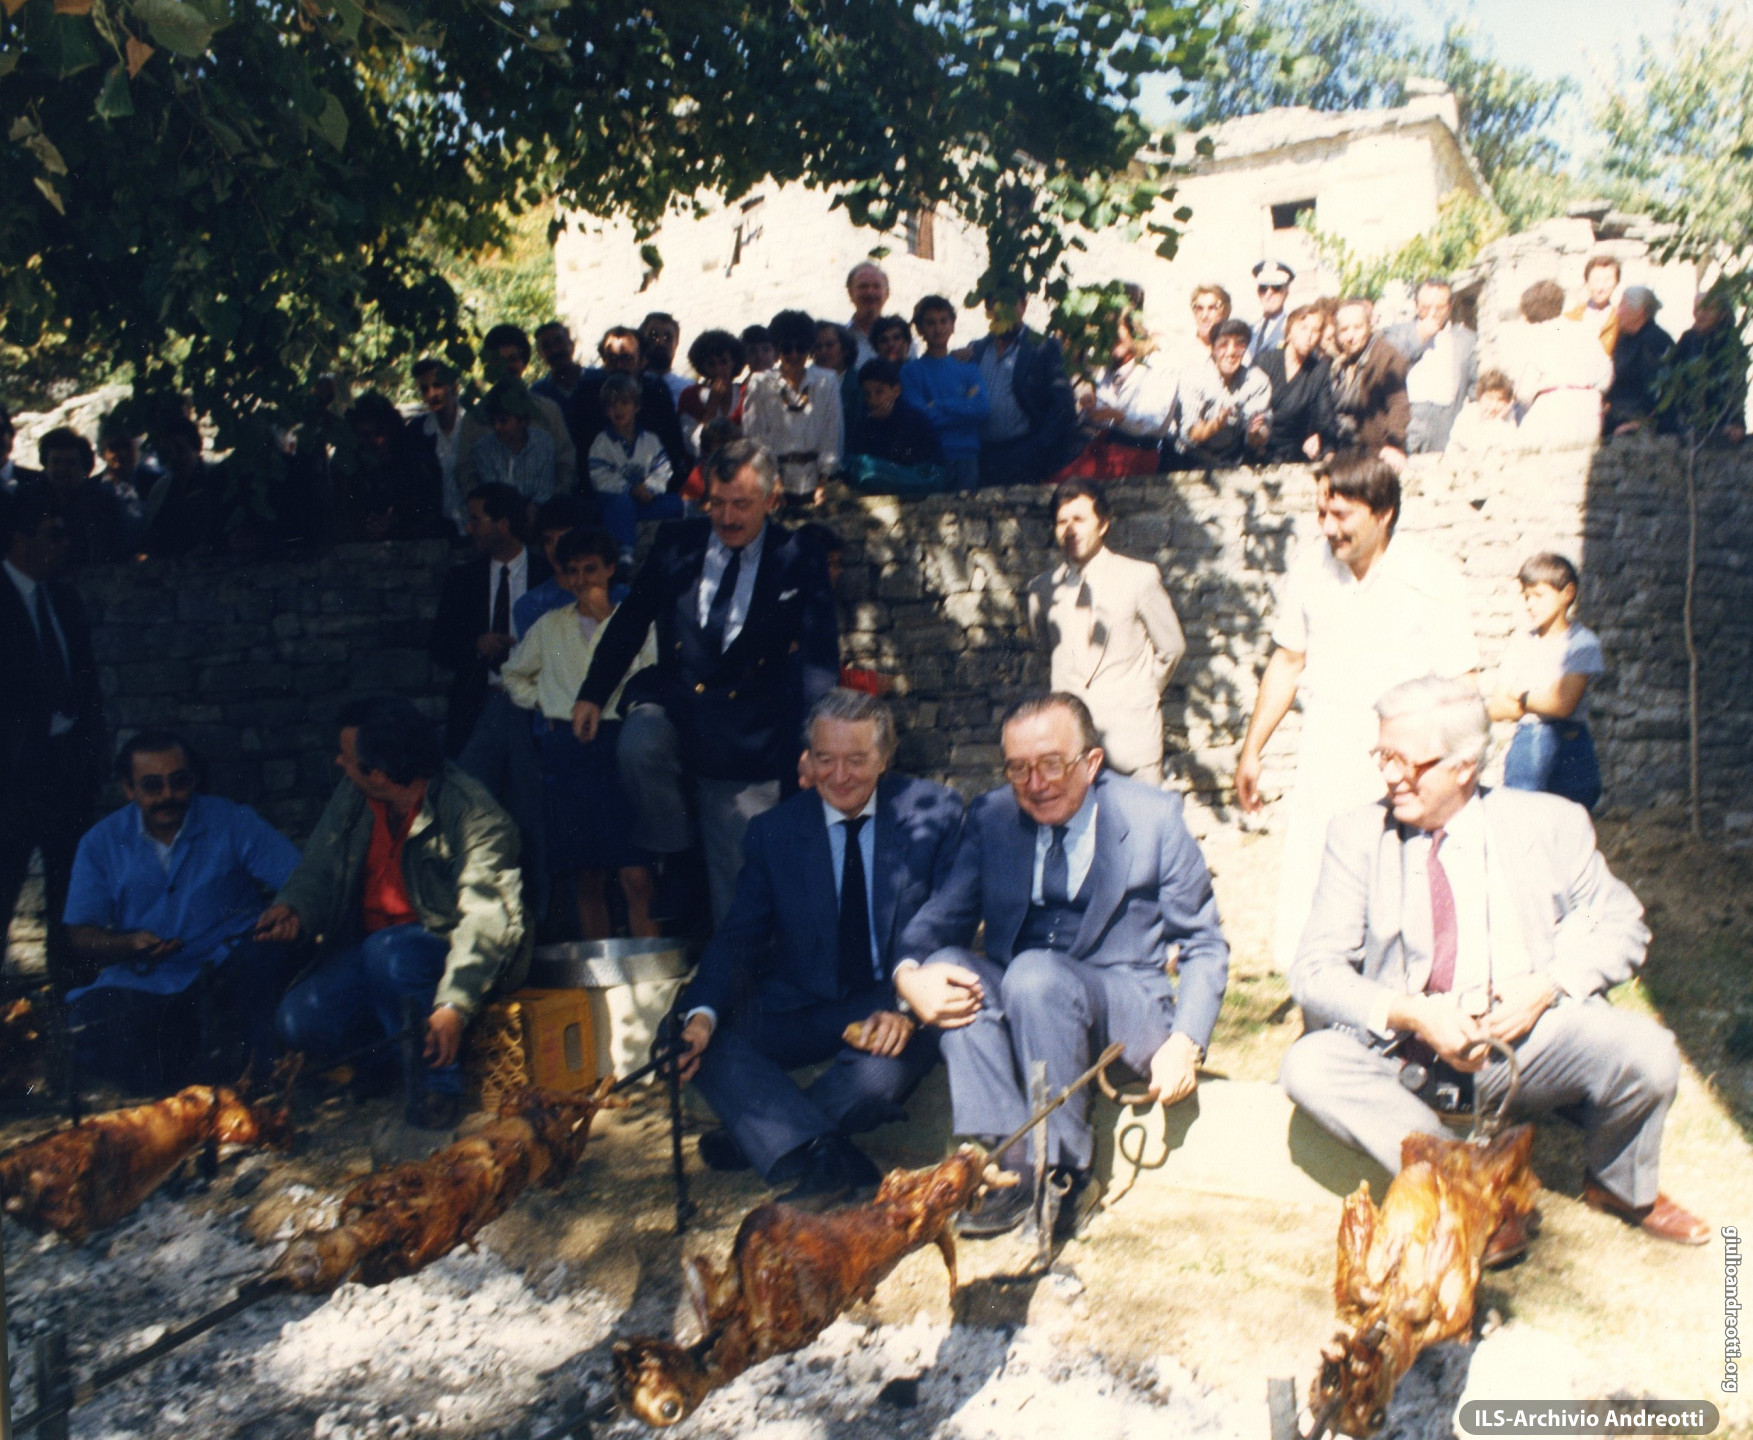 1988. Andreotti al Consiglio dei ministri degli Esteri europei a Giannina in Grecia.